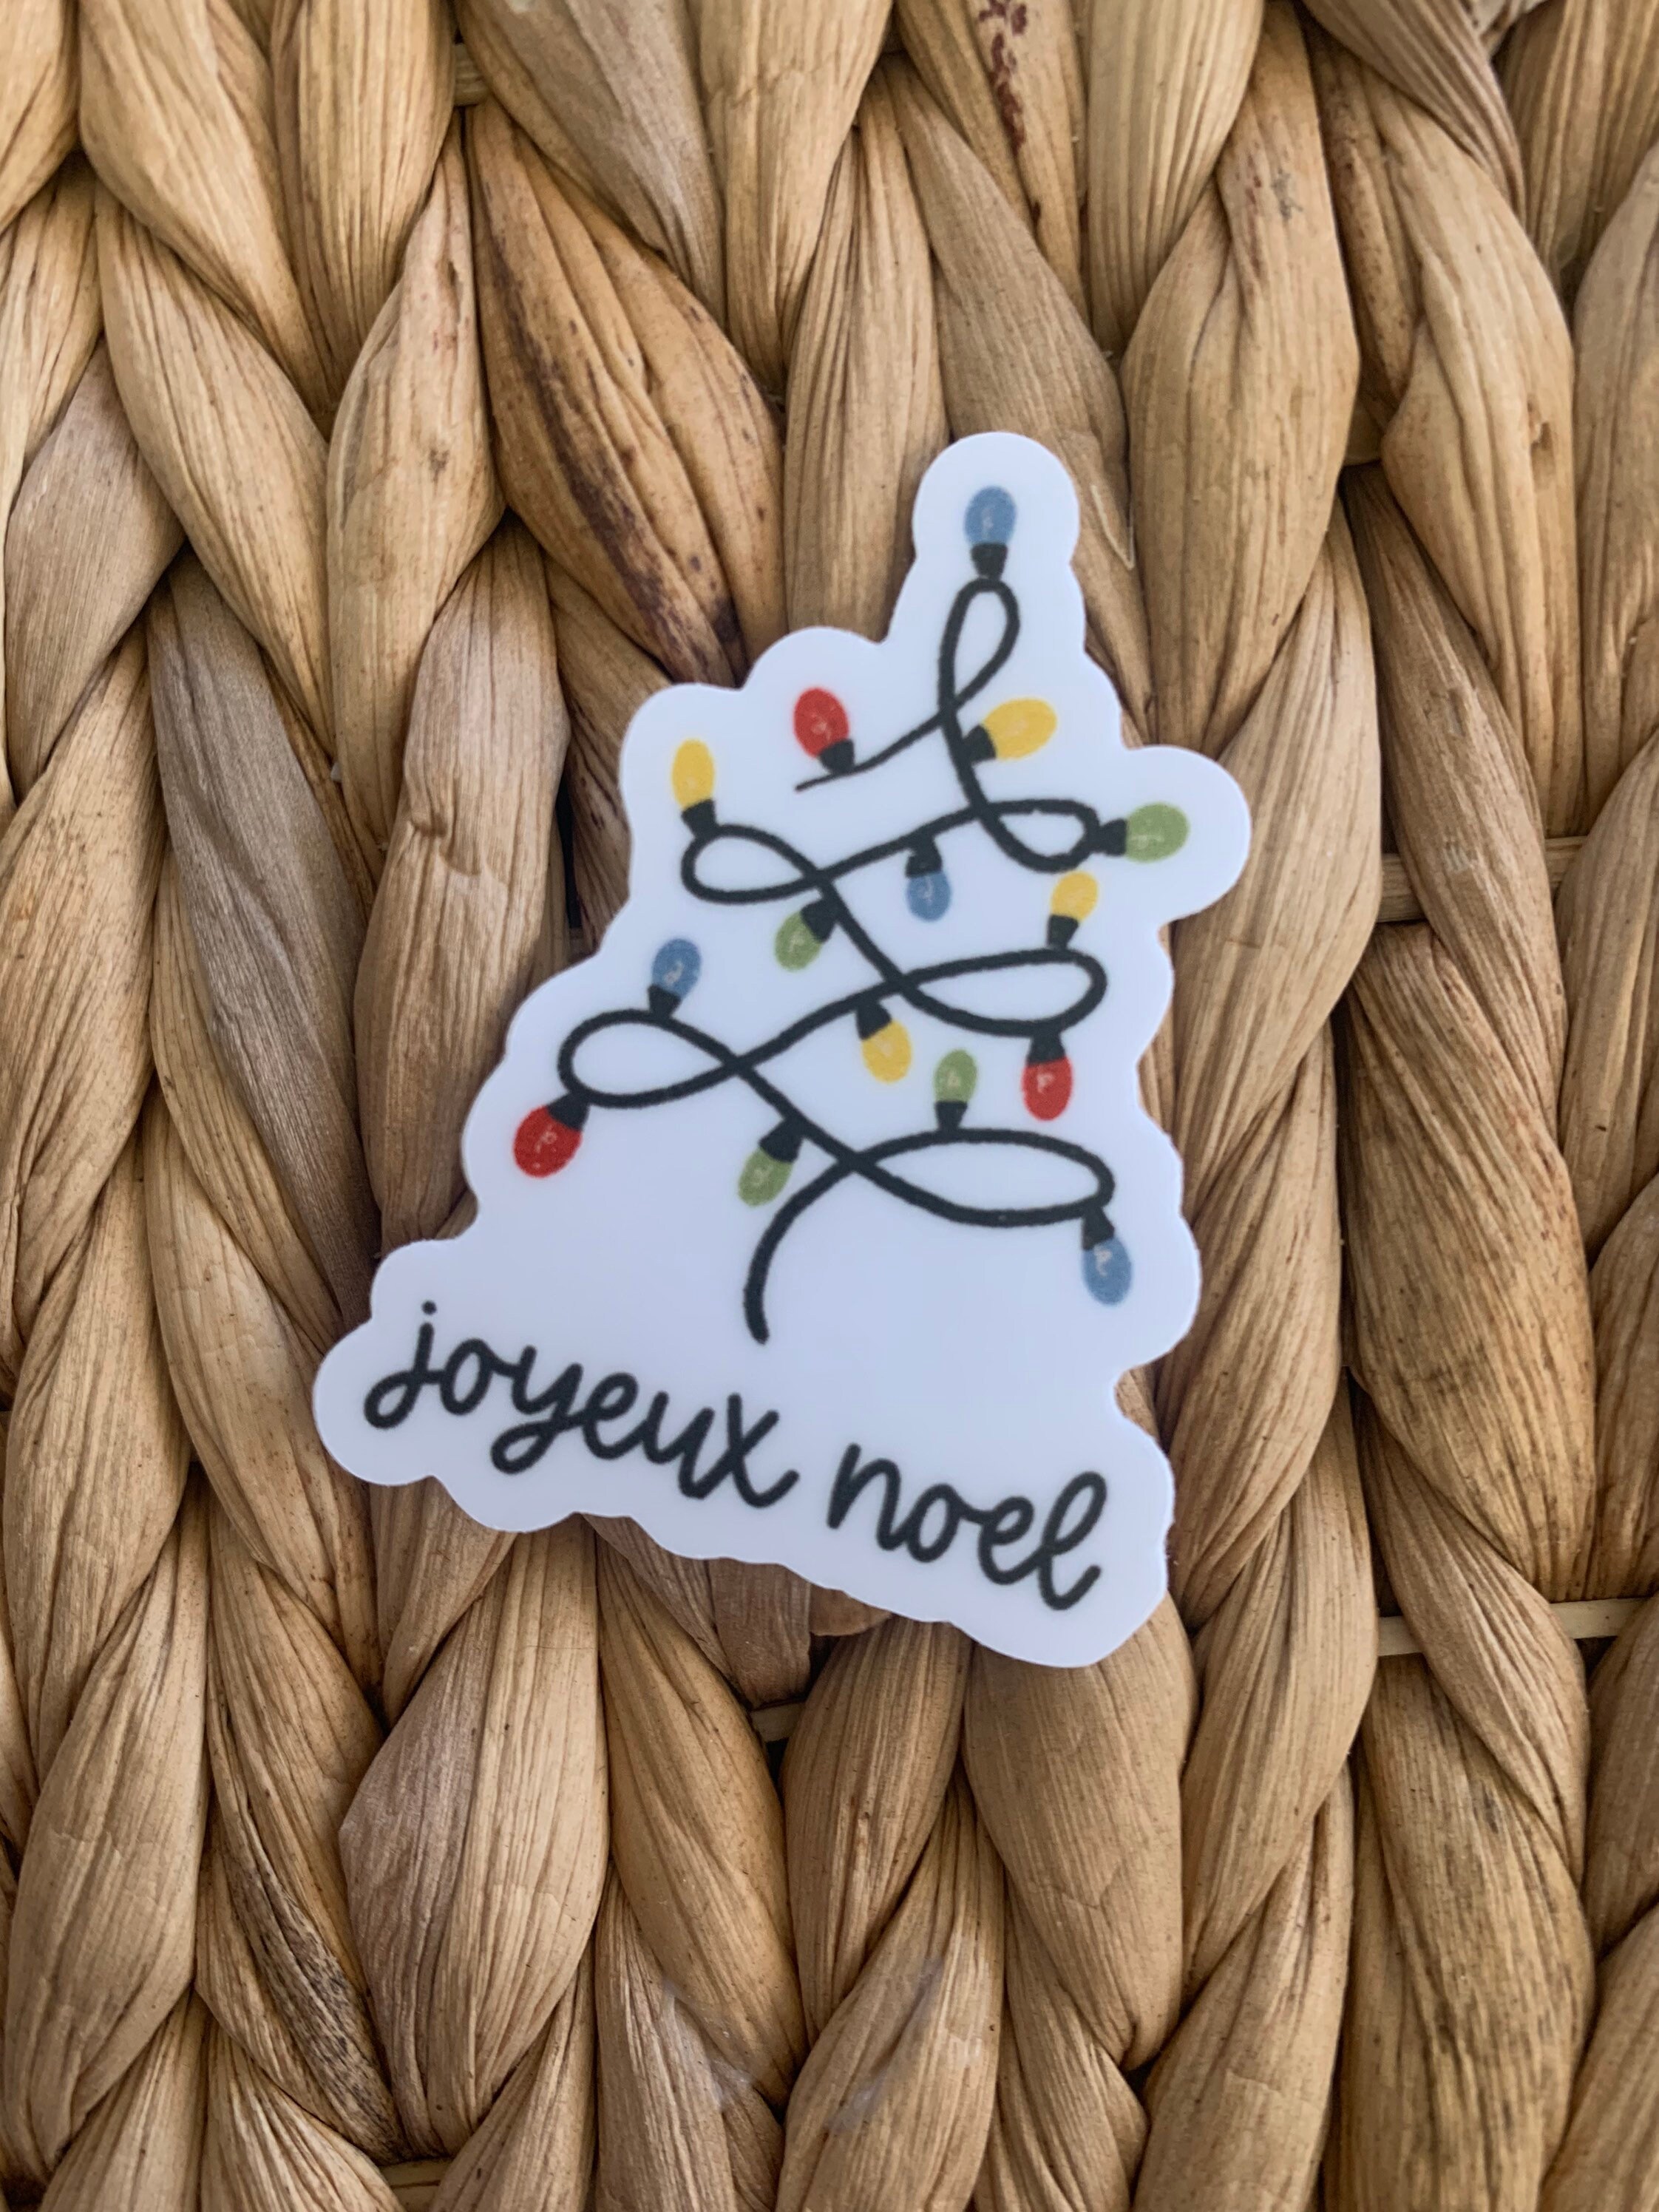 Sticker Noël décoration joyeux noël - Autocollants stickers adhésifs noël -  décoration fêtes - 120x130cm